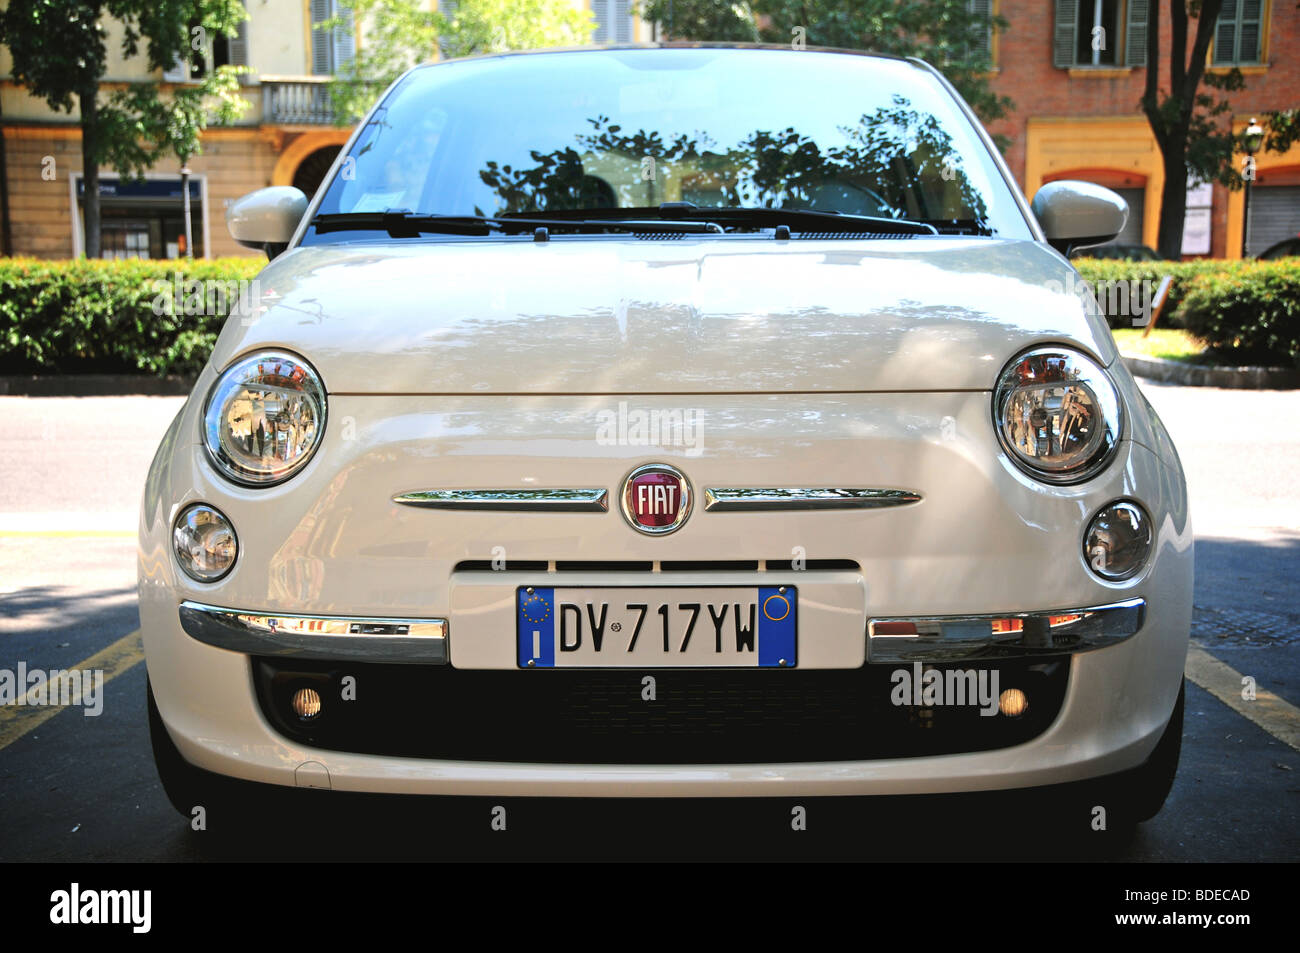 White Fiat 500 car, Italy Stock Photo